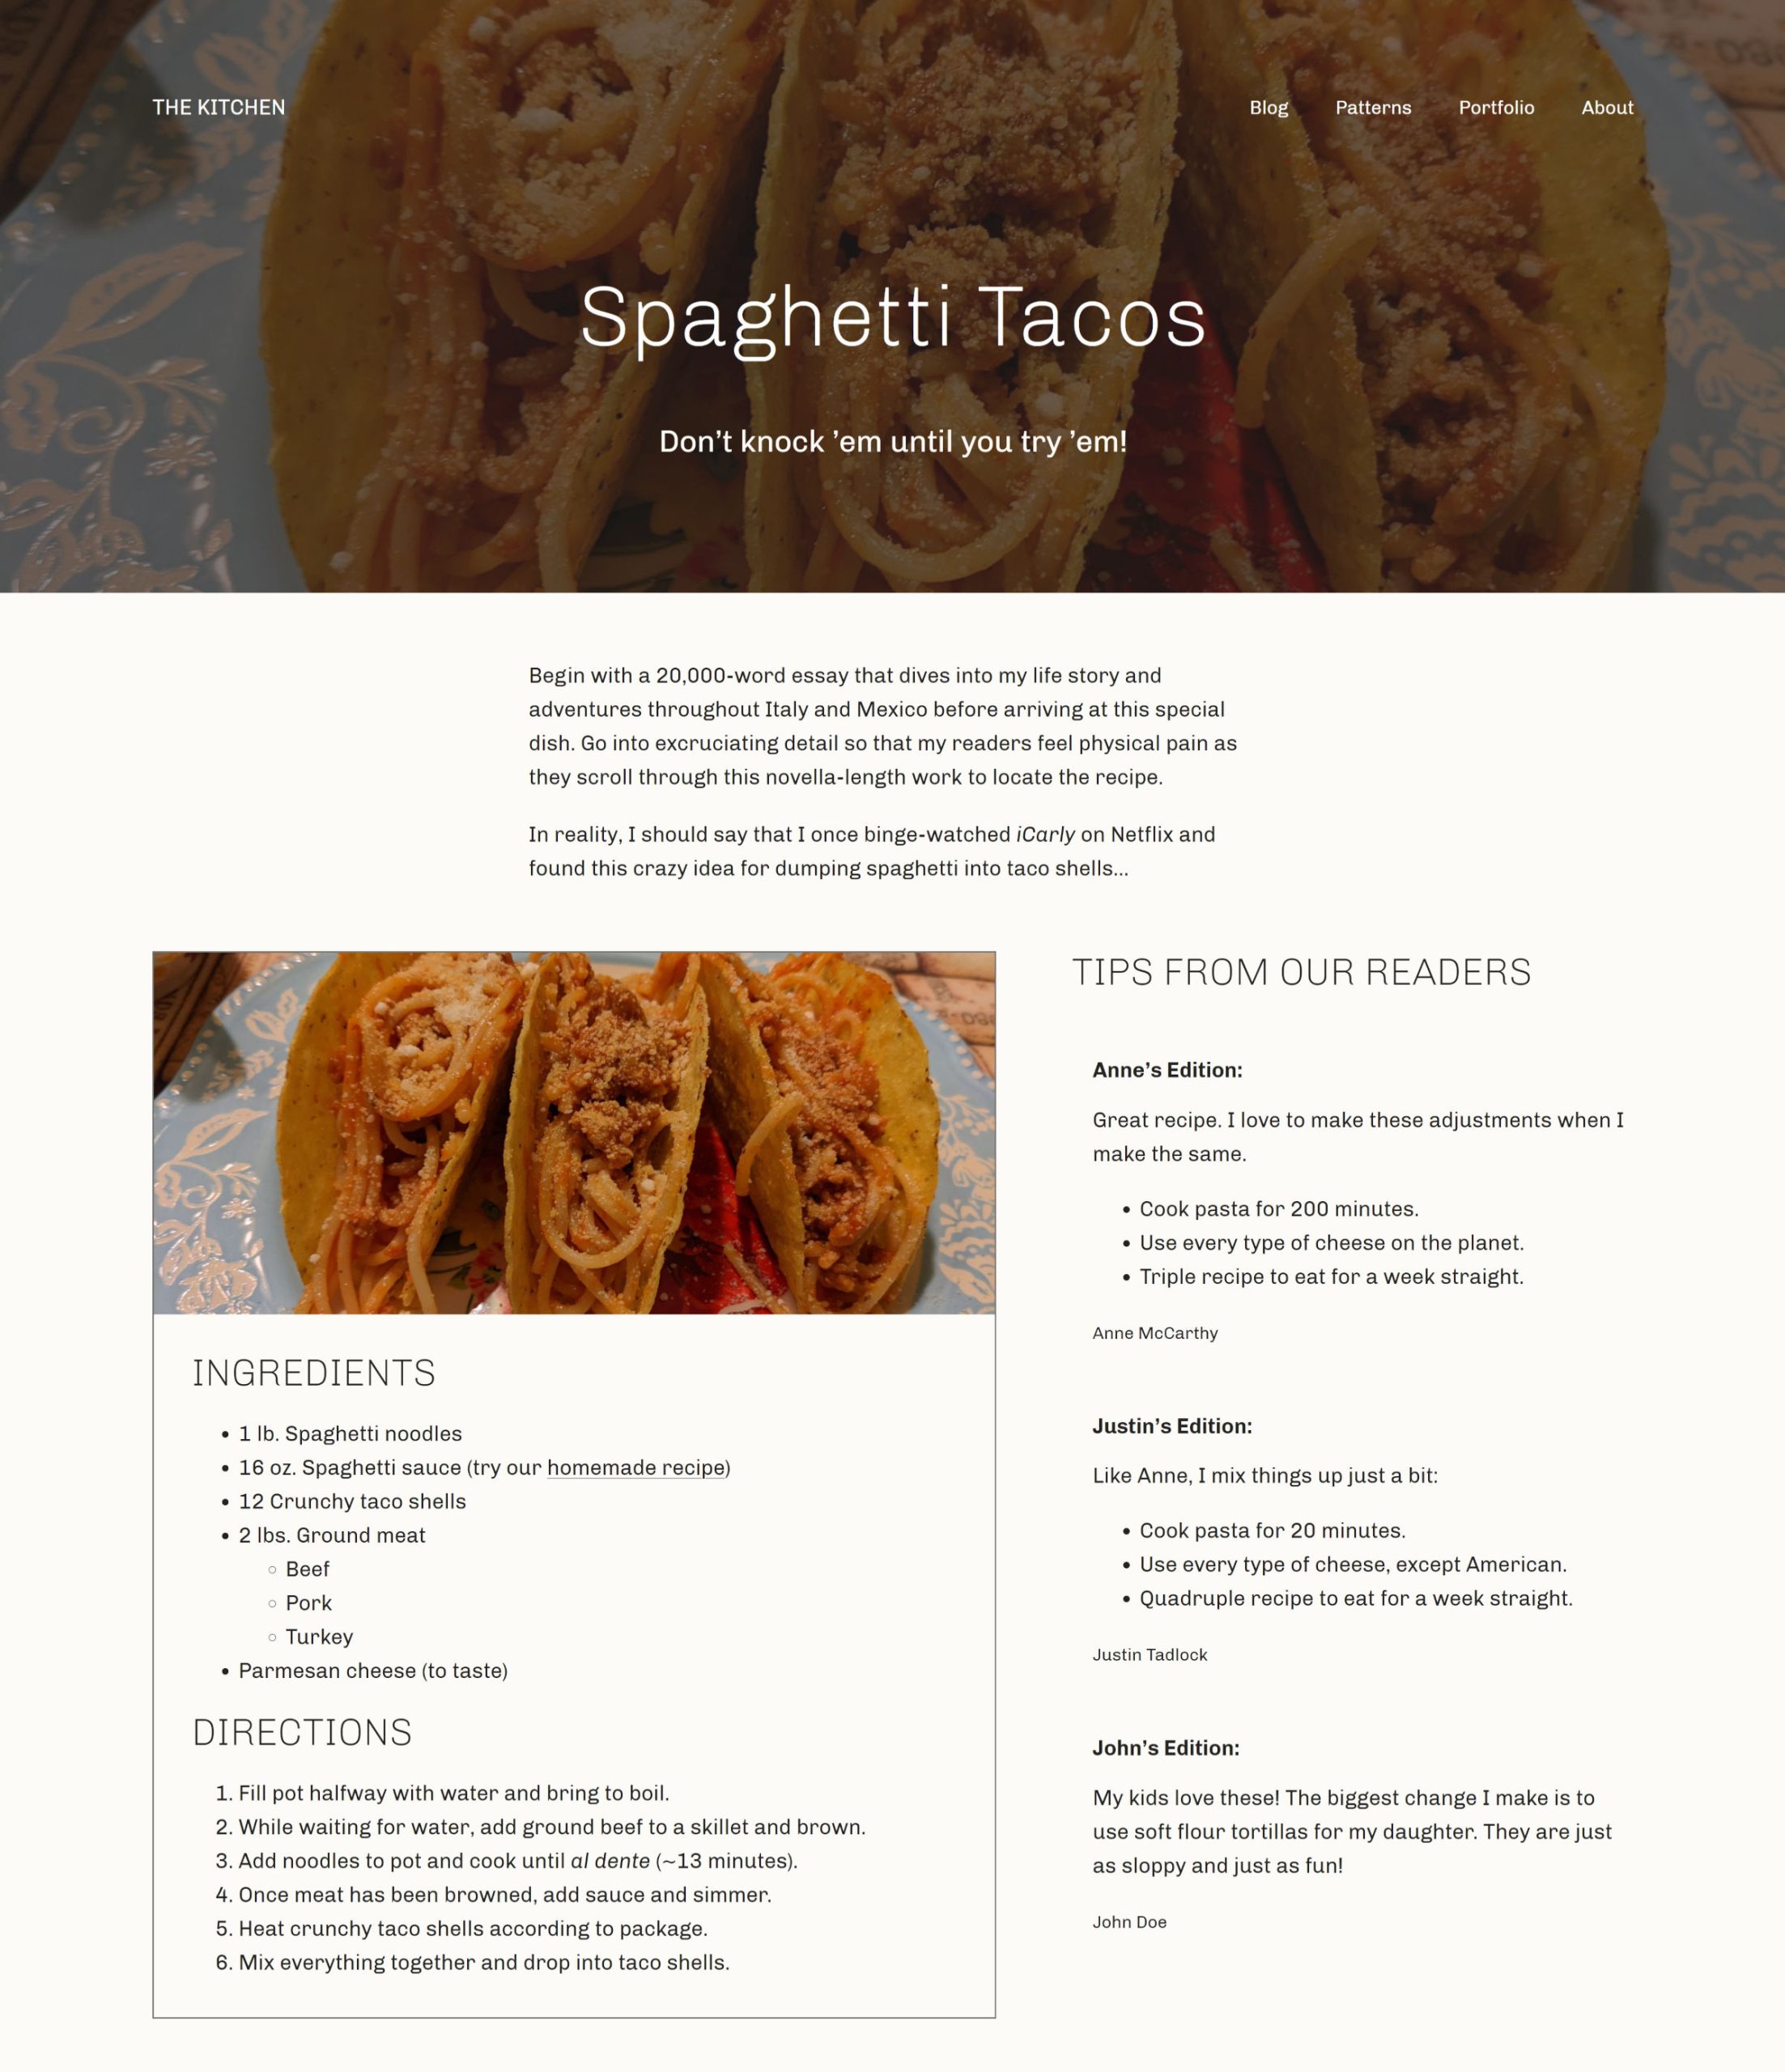 WordPress-Post auf der Vorderseite eines Rezepts.  Er hat einen Hero-Header mit einem Bild von Spaghetti-Tacos, gefolgt von einer Beschreibung.  Darunter befinden sich zwei Spalten.  Eine Rezeptkarte auf der linken Seite und Tipps von Lesern auf der rechten Seite.